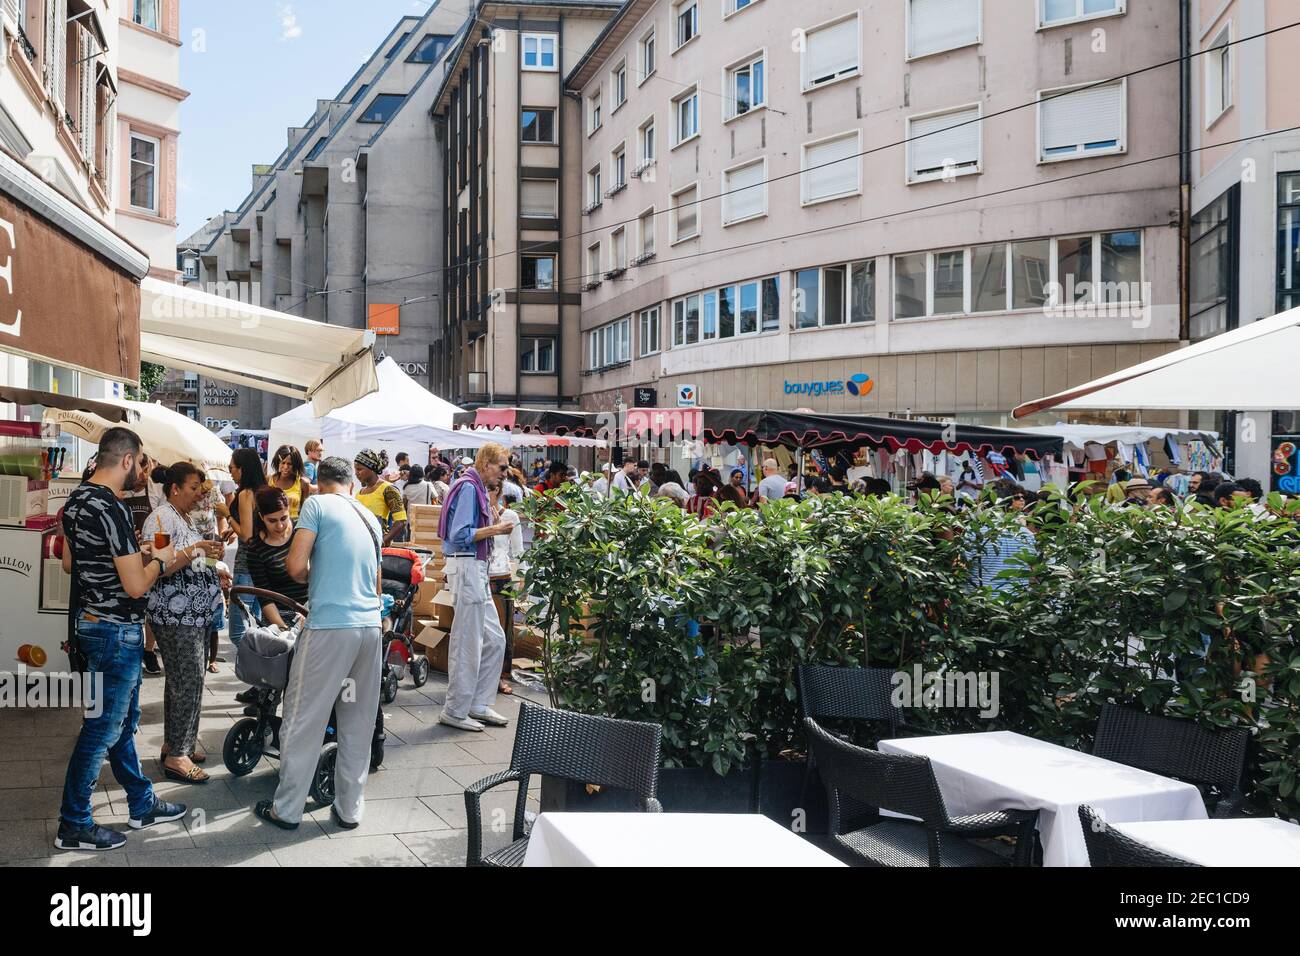 Straßburg, Frankreich - 29. Juli 2017: Große Menschenmenge, die in der Nähe der Straßenbahnhaltestelle Homme de Fer und der Geschäfte während der Grande Braderie Straßenmesse jährlichen Verkaufsveranstaltung läuft - Freunde trinken draußen Biergläser Stockfoto